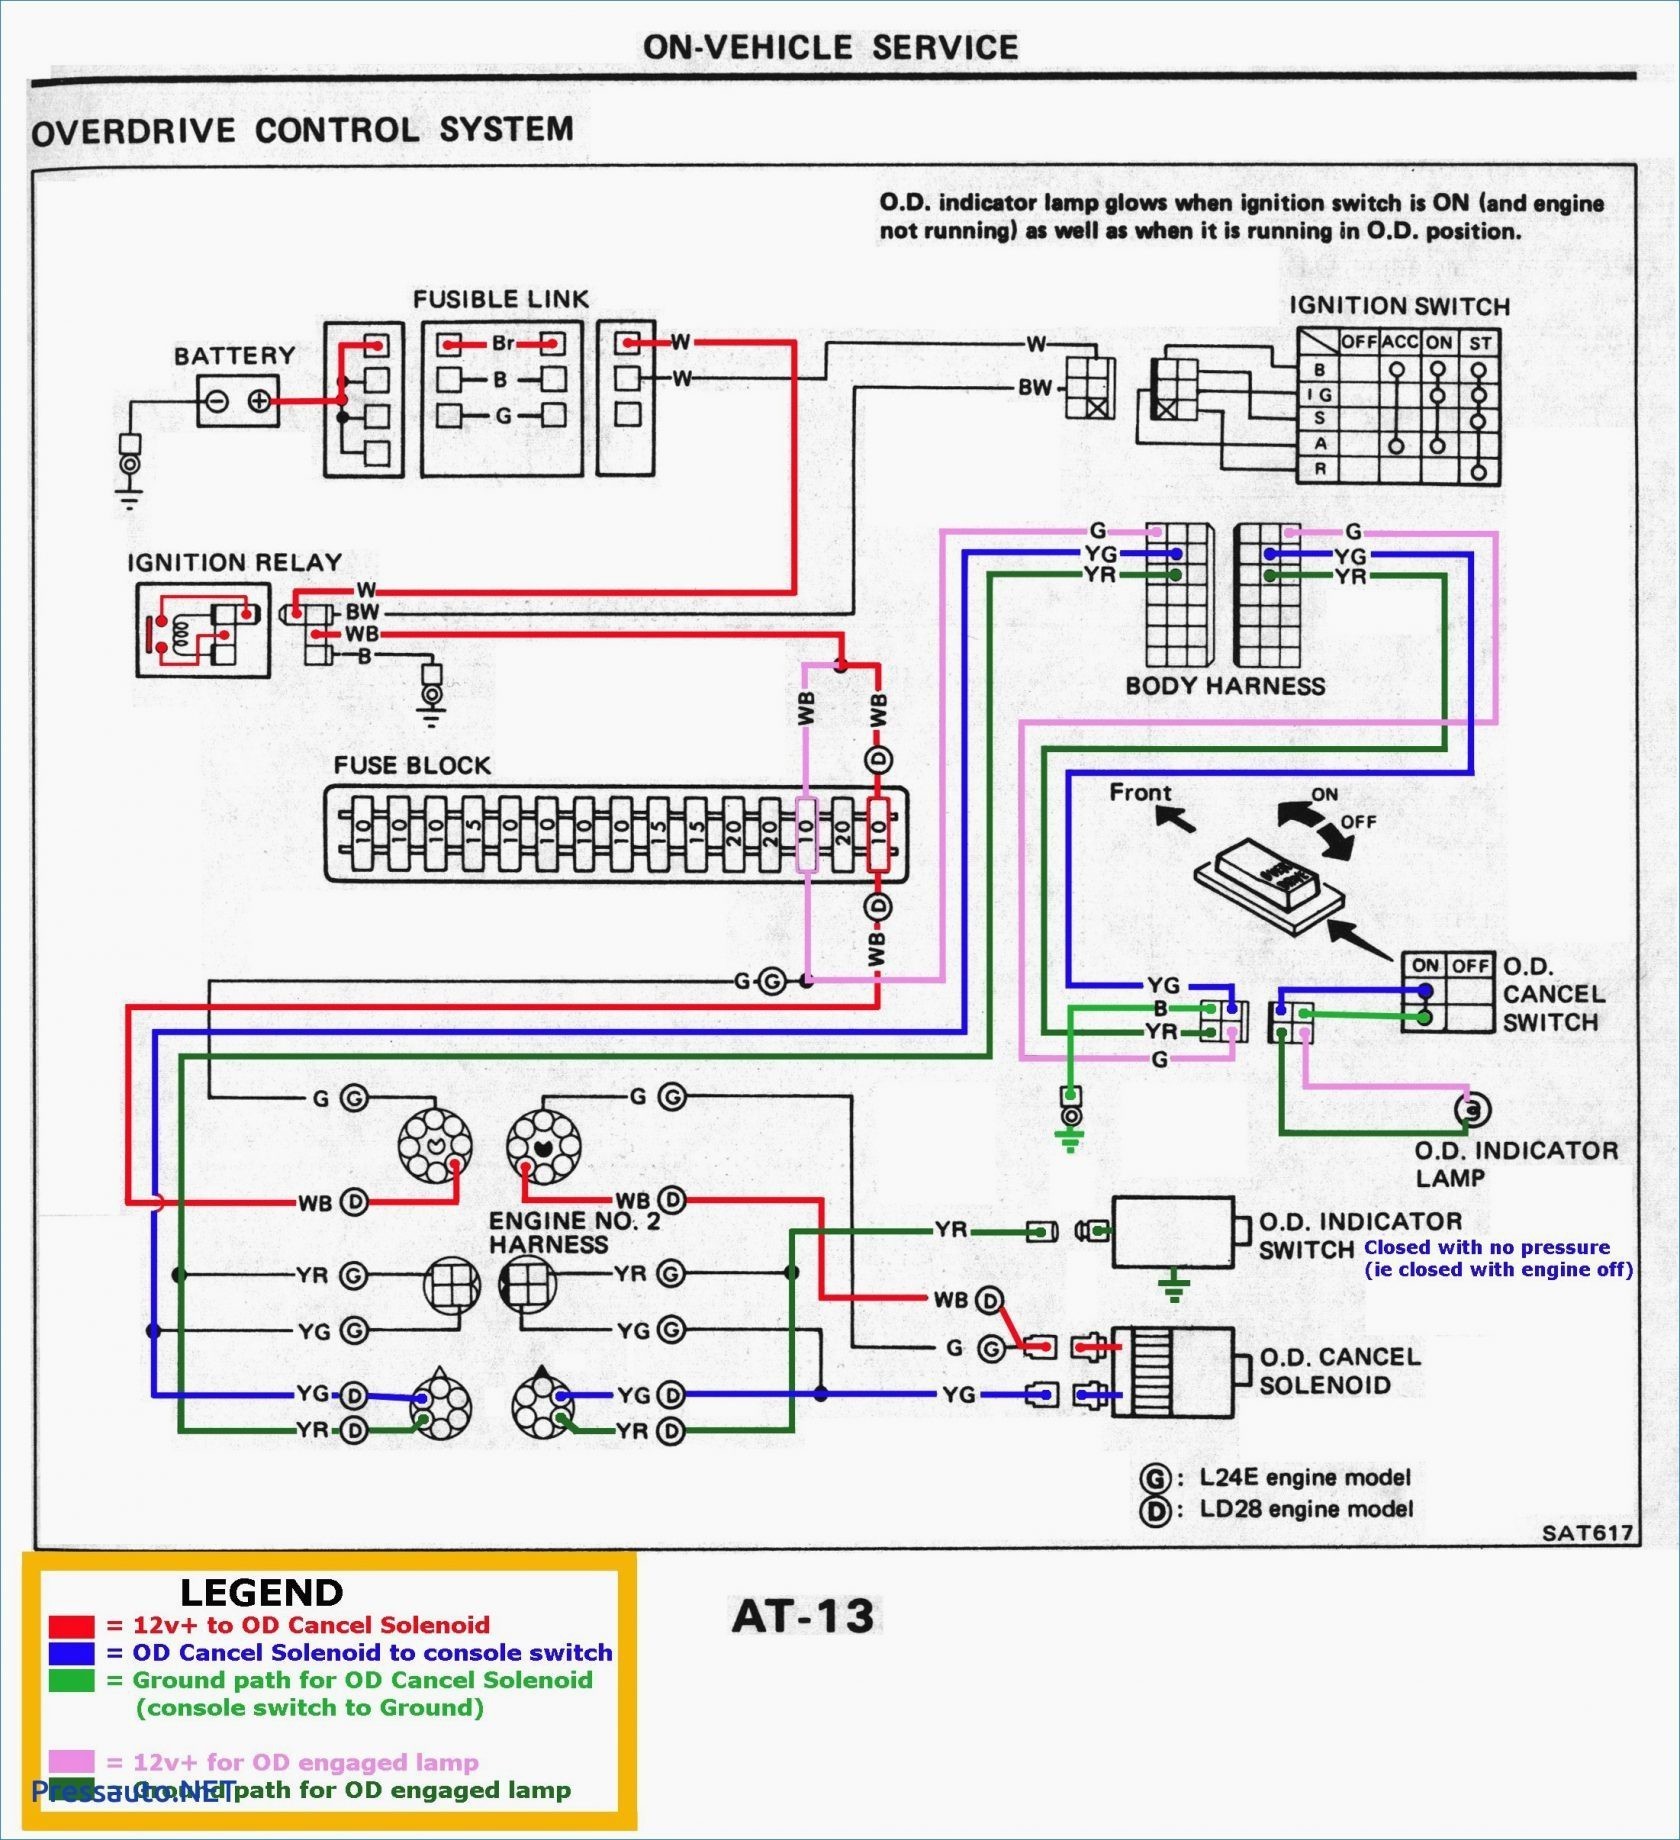 1994 toyota Corolla Wiring Diagram 93 toyota Corolla Wiring Diagram Of 1994 toyota Corolla Wiring Diagram